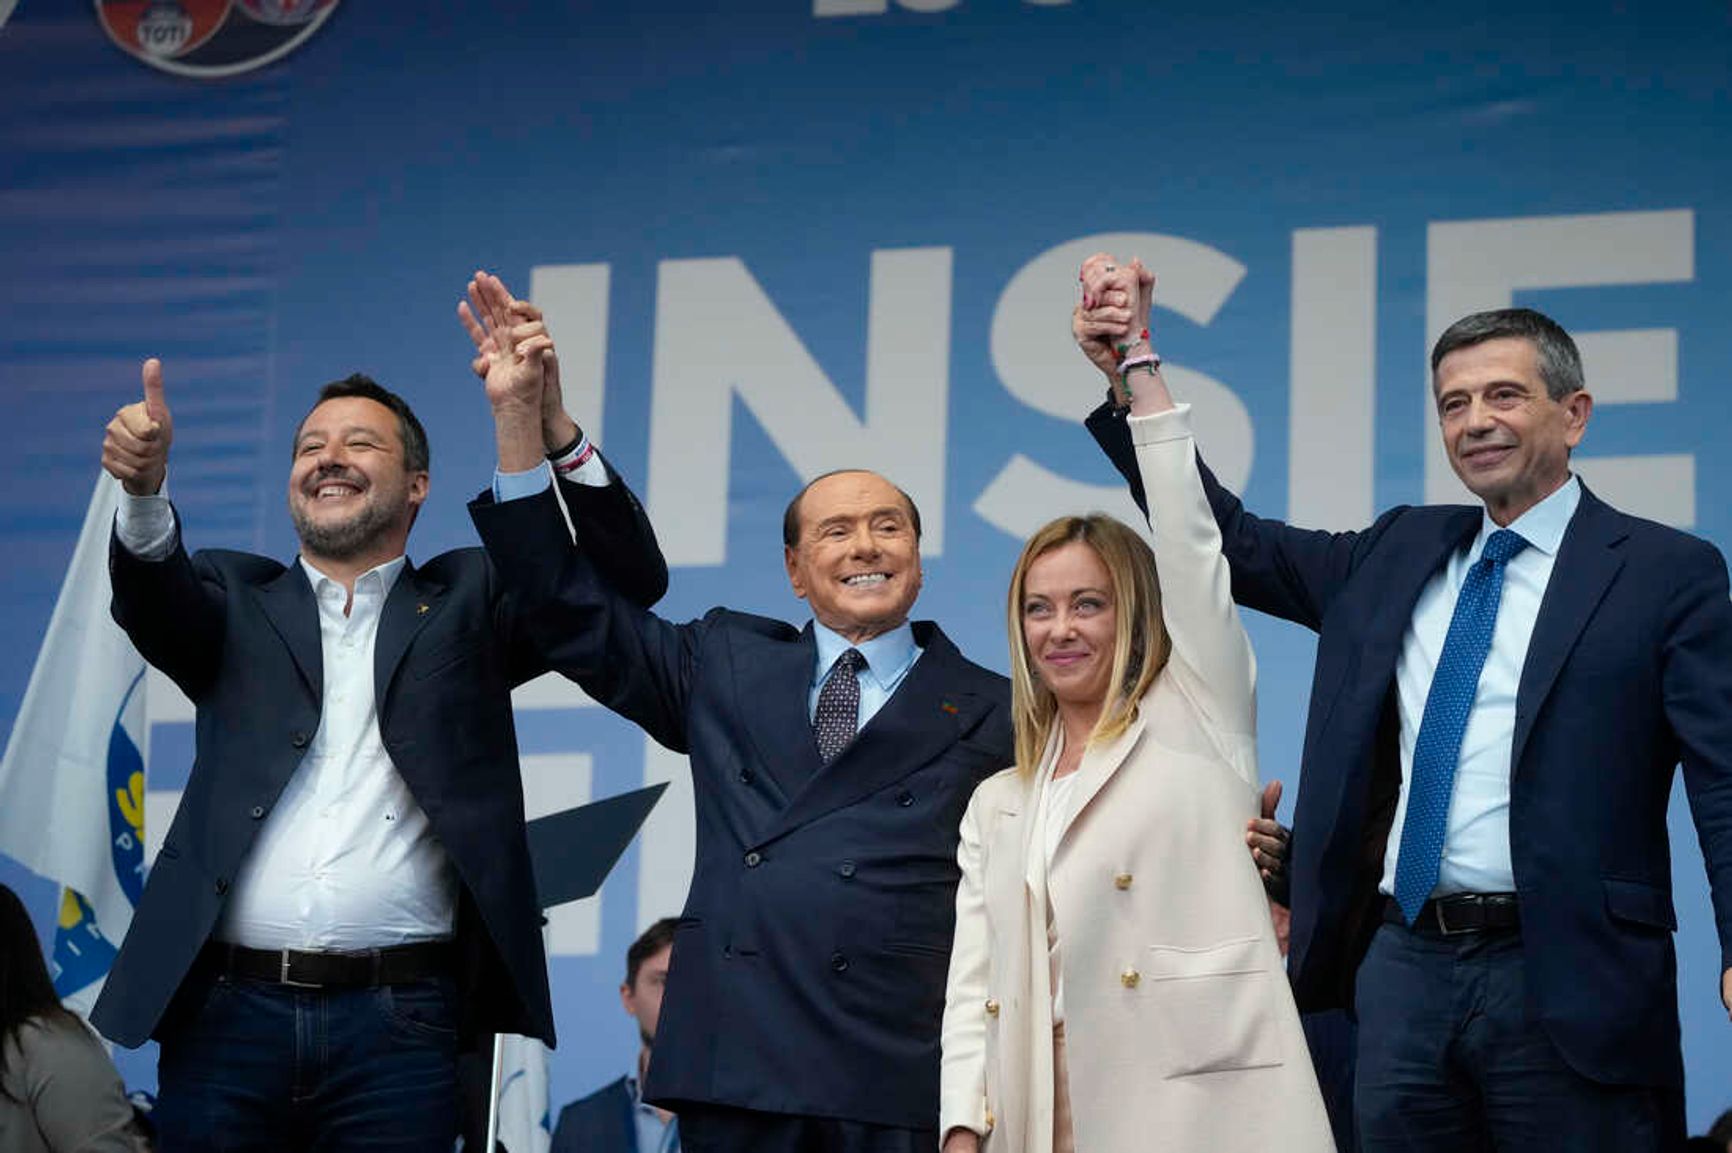 Правоцентристская коалиция: лидеры «Лиги Севера» Маттео Сальвини, «Вперед, Италия!» Сильвио Берлускони, «Братья Италии» Джорджия Мелони и «Мы с Италией» Маурицио Лупи